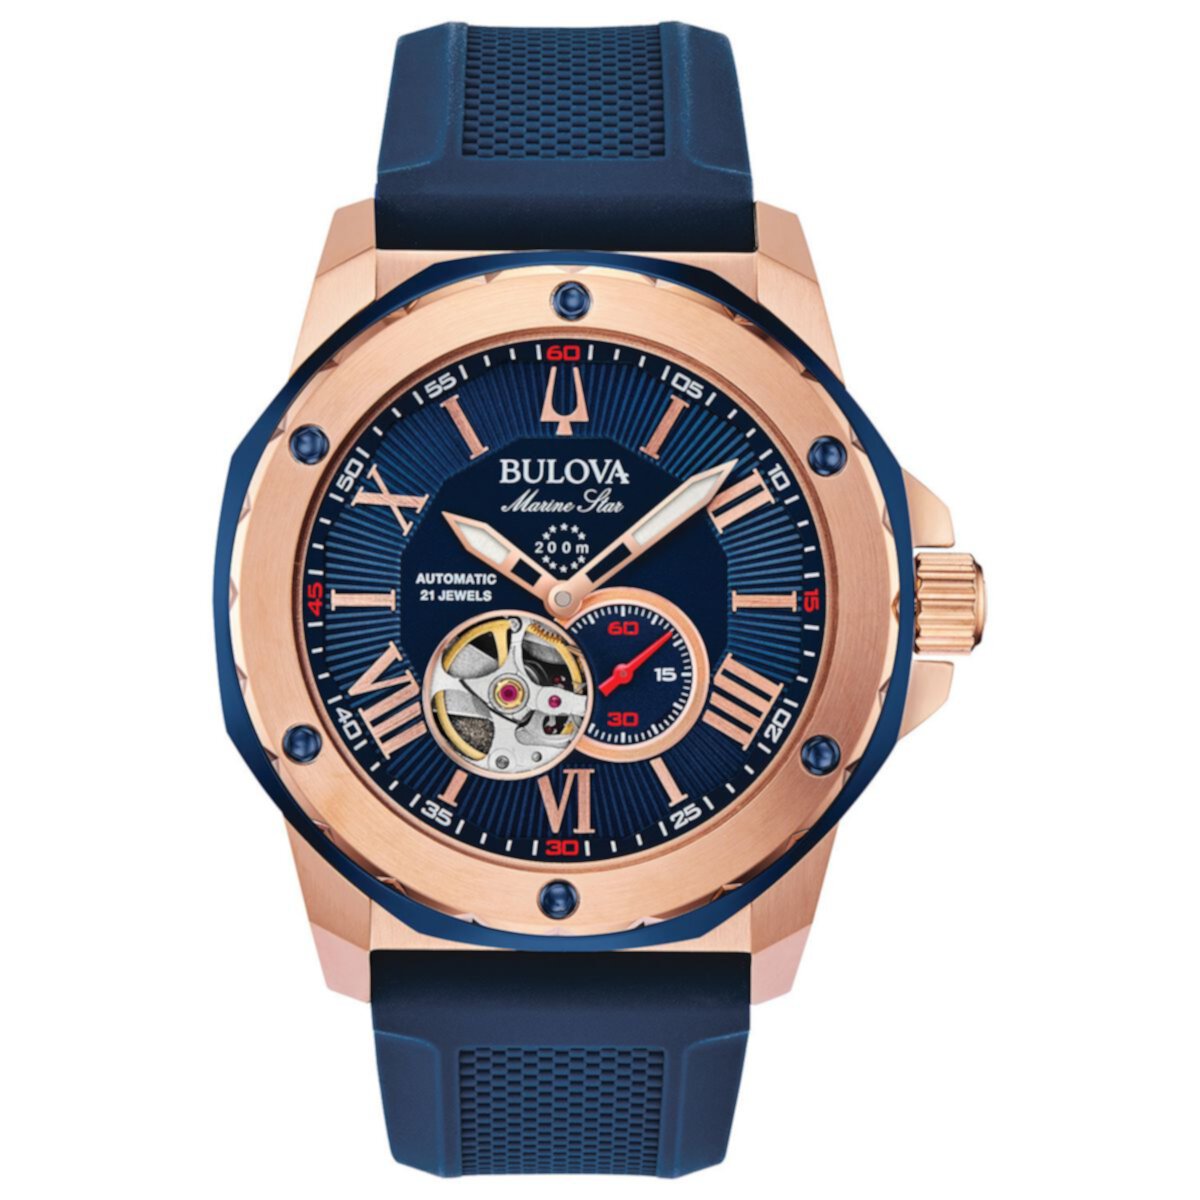 Мужские часы Bulova Marine Star с синим силиконовым ремешком и автоматическими часами - 98A227 Bulova